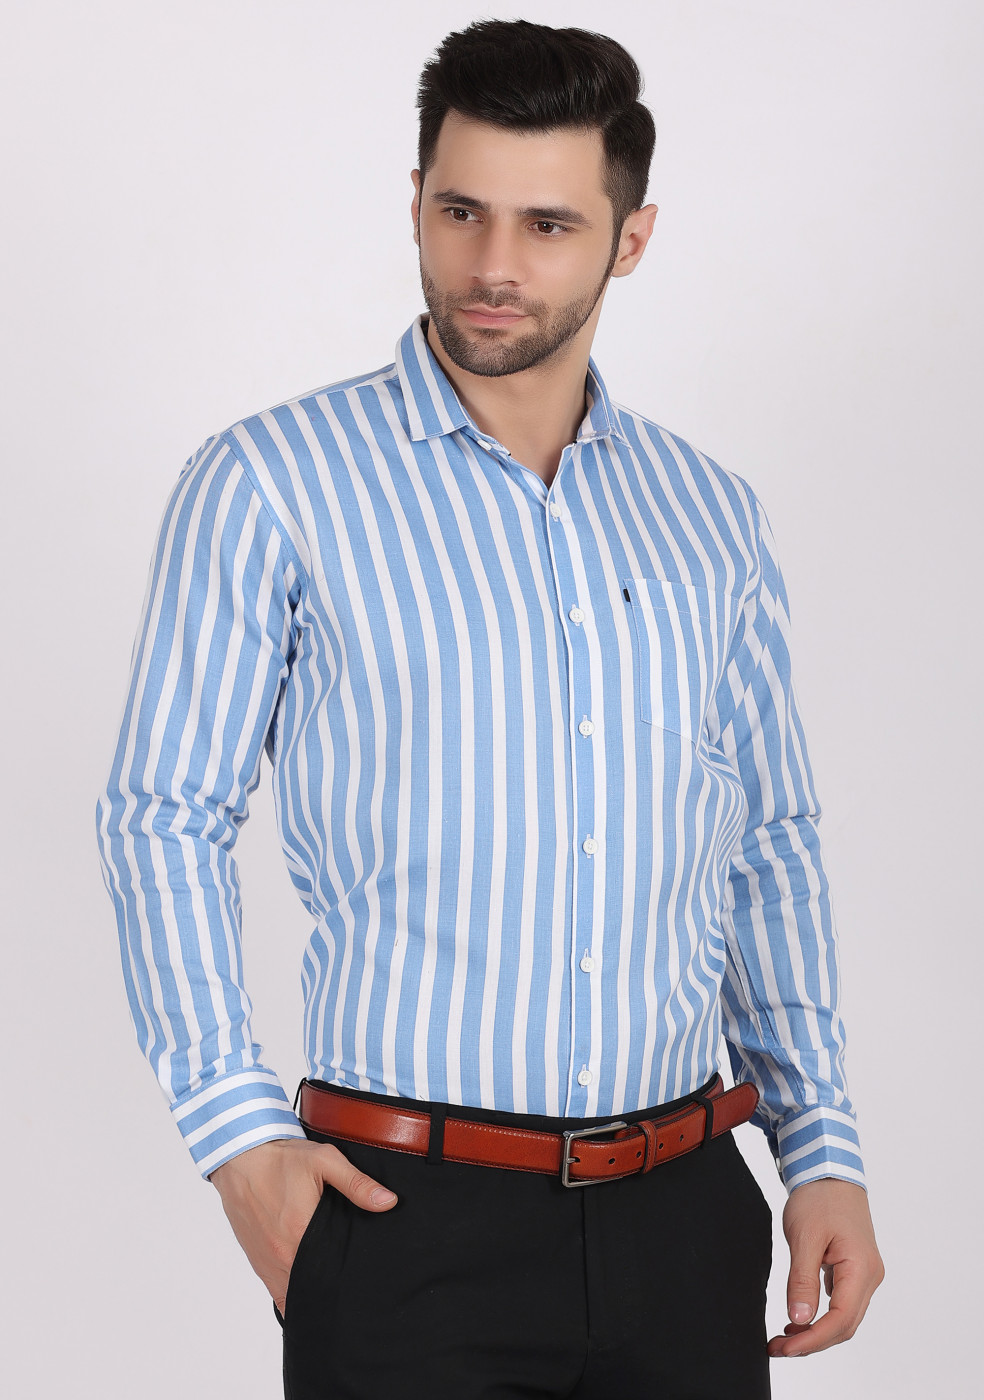 Buy online ASHTOM Blue White Lining Shirt For Men